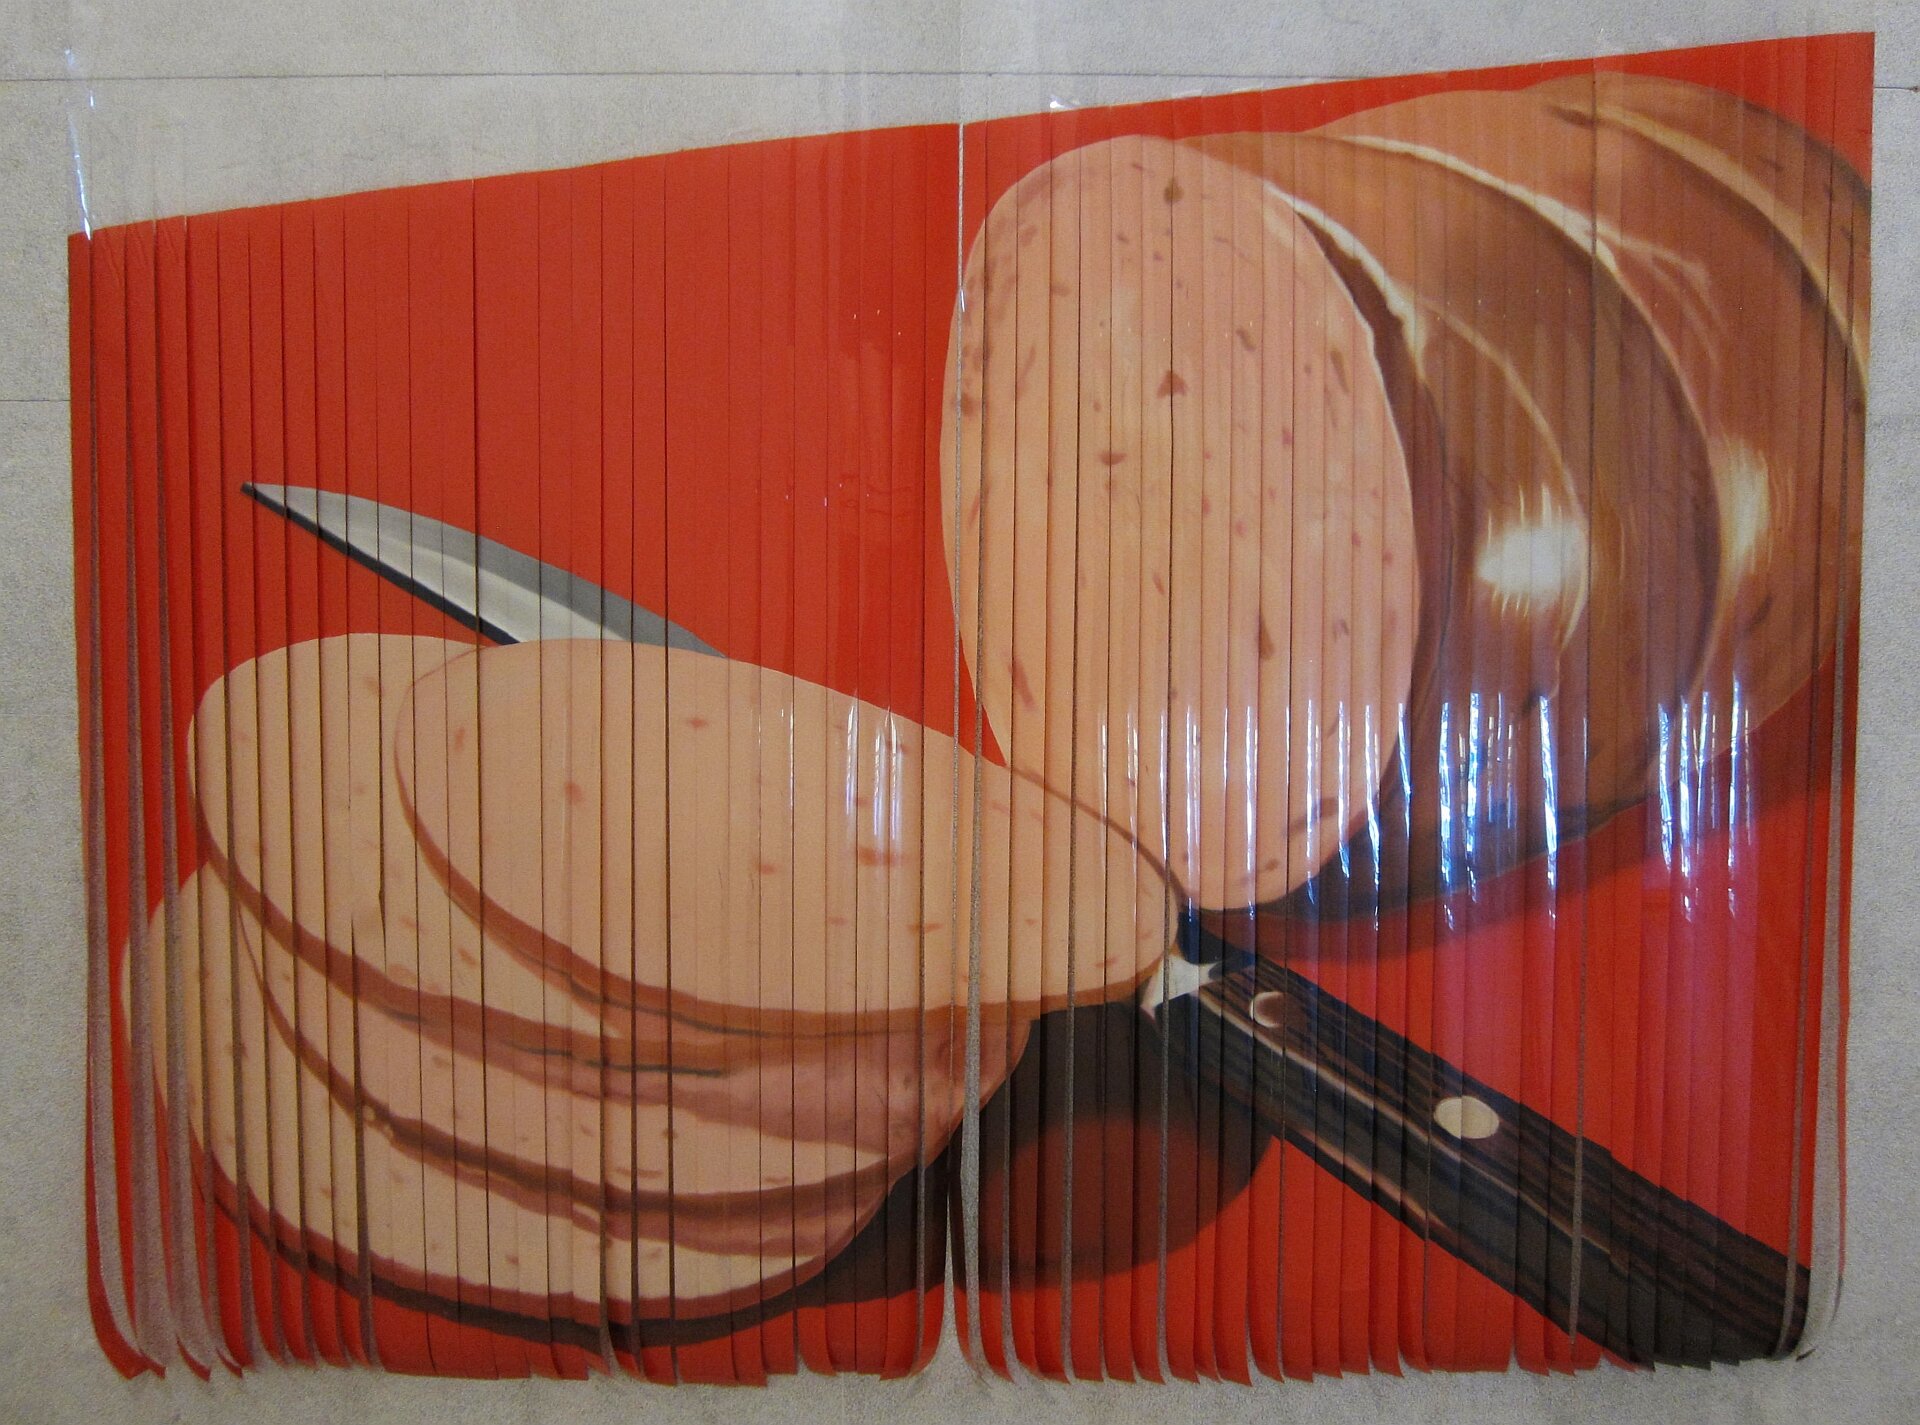 Ilustracja przedstawia dzieło Jamesa Rosenquista „Plastry mortadeli”. Wykonana jest na paskach filmowych. Ukazuje kiełbasę oraz ukrojone plastry na czerwonym tle. Pomiędzy nimi leży nóż z czarną rękojeścią.